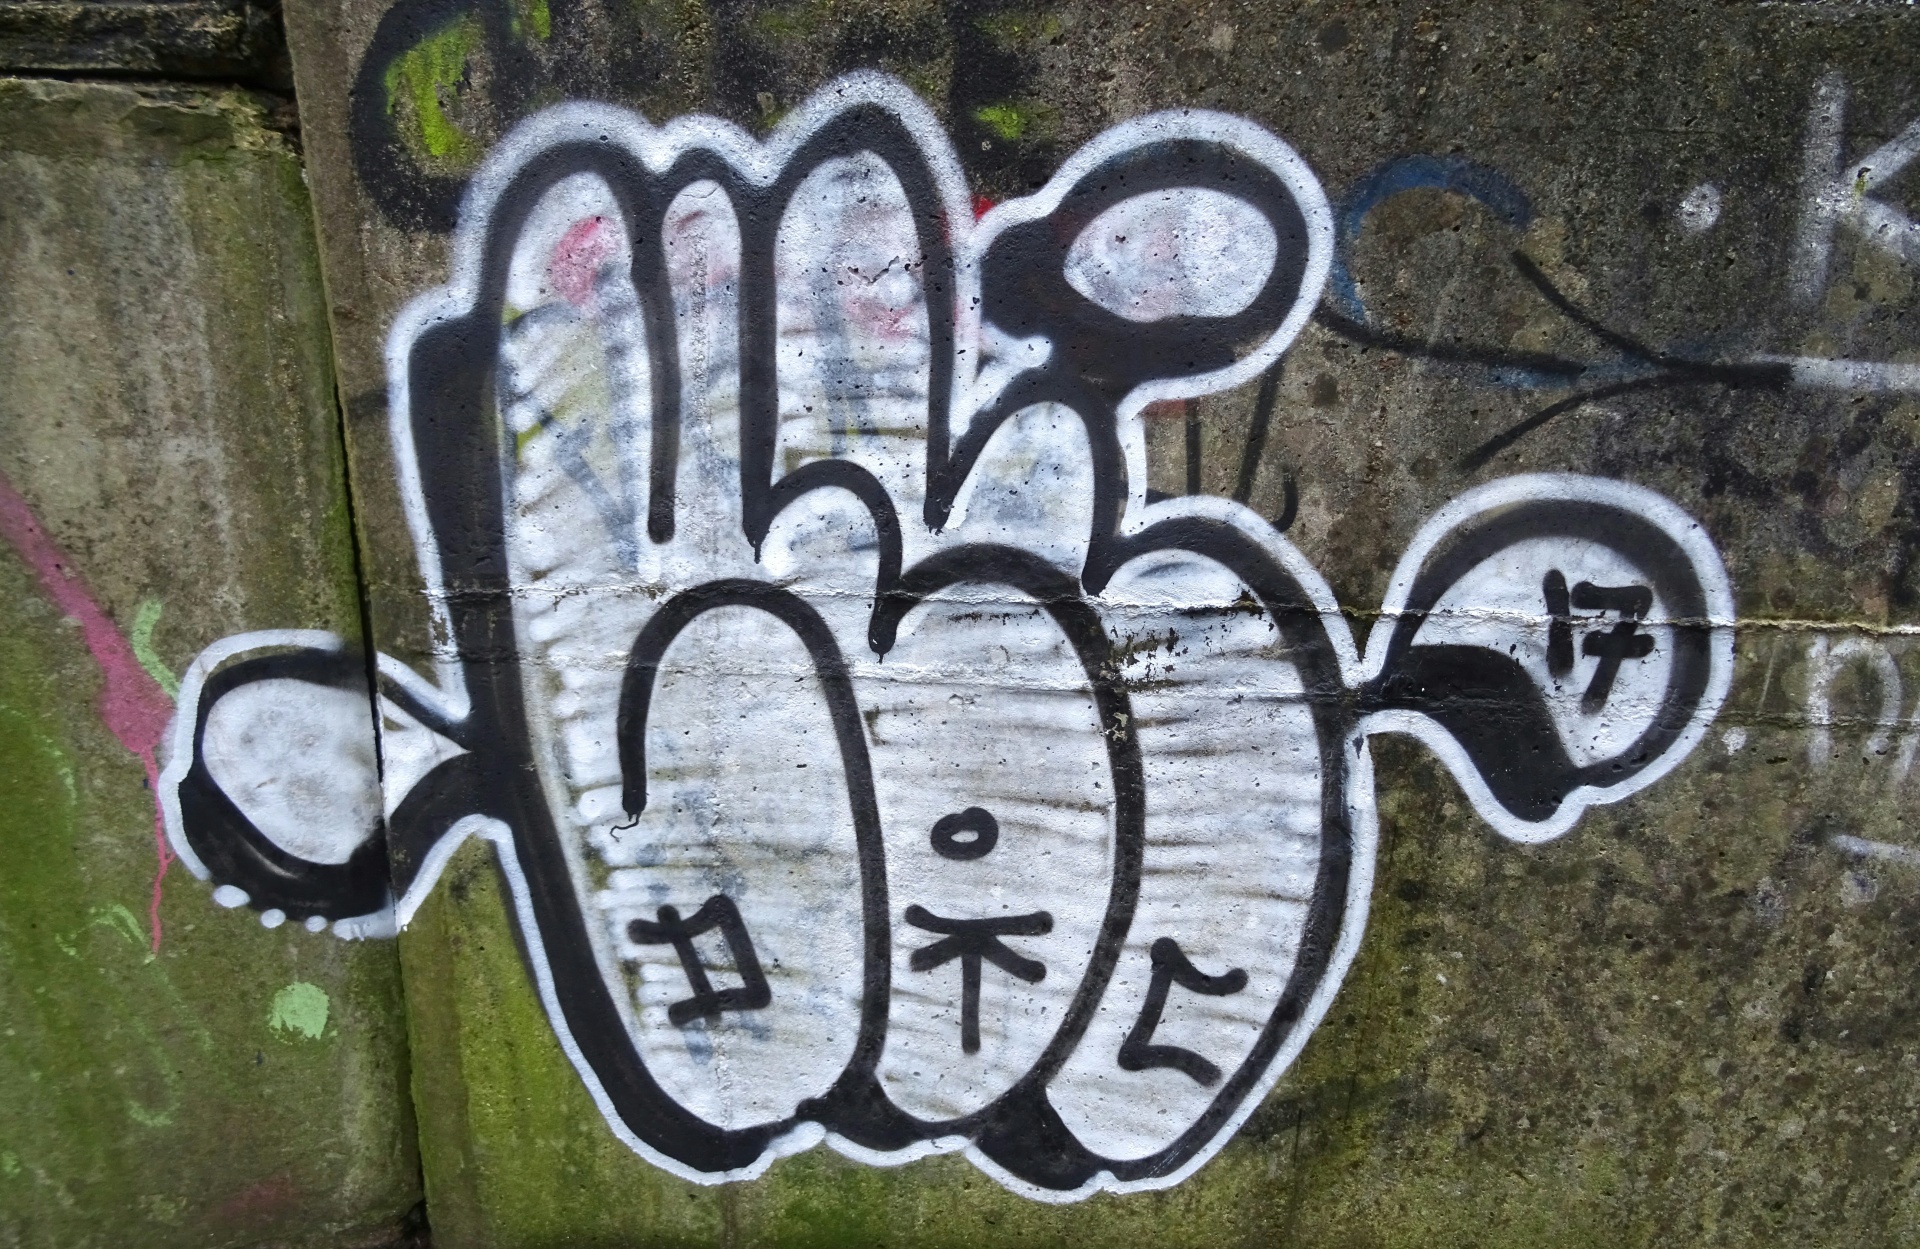 Graffiti-Wand